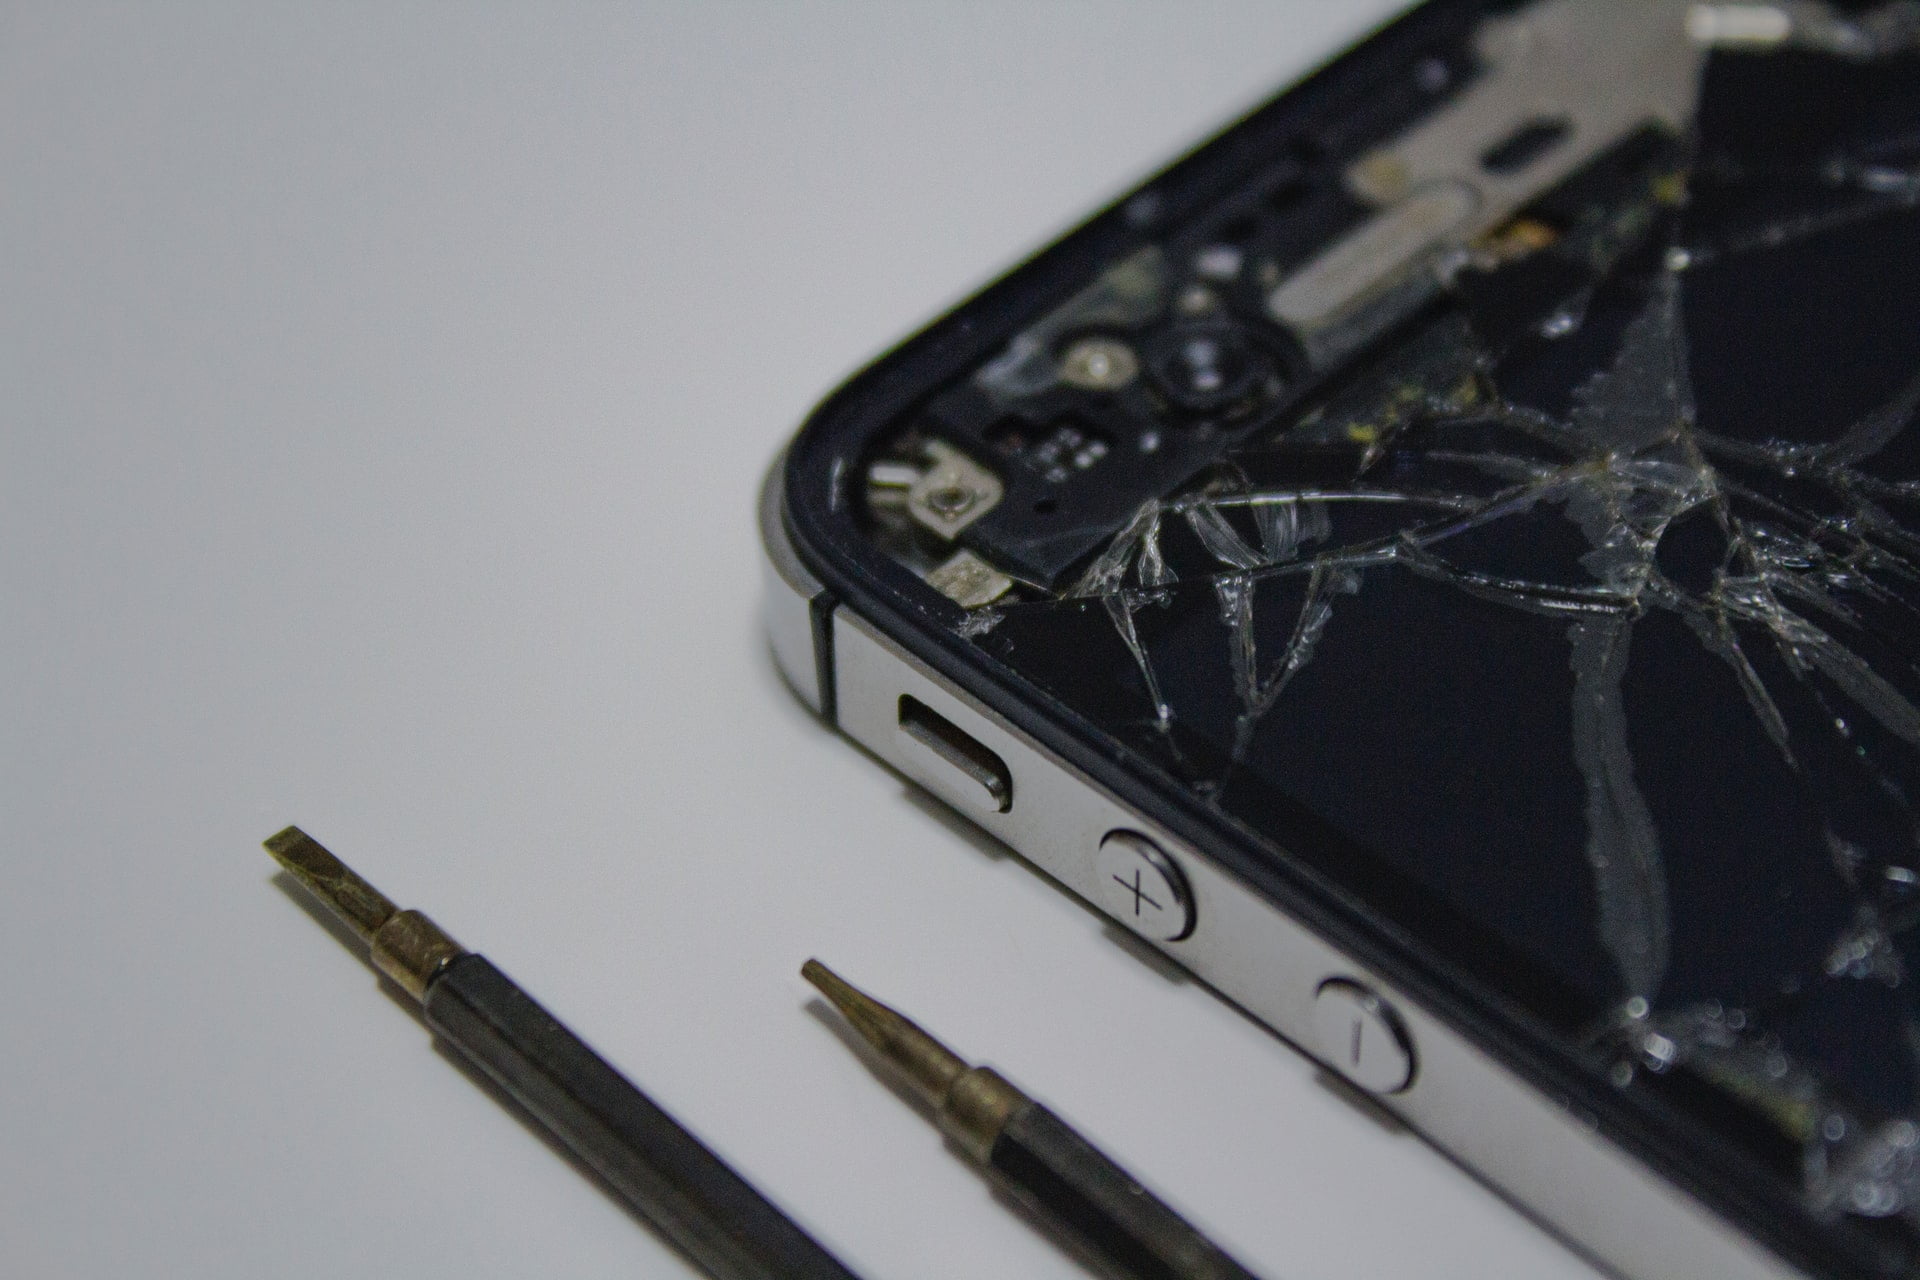 Apple To Let Users Repair Iphones And Macs With ‘Self Service Repair’ Program